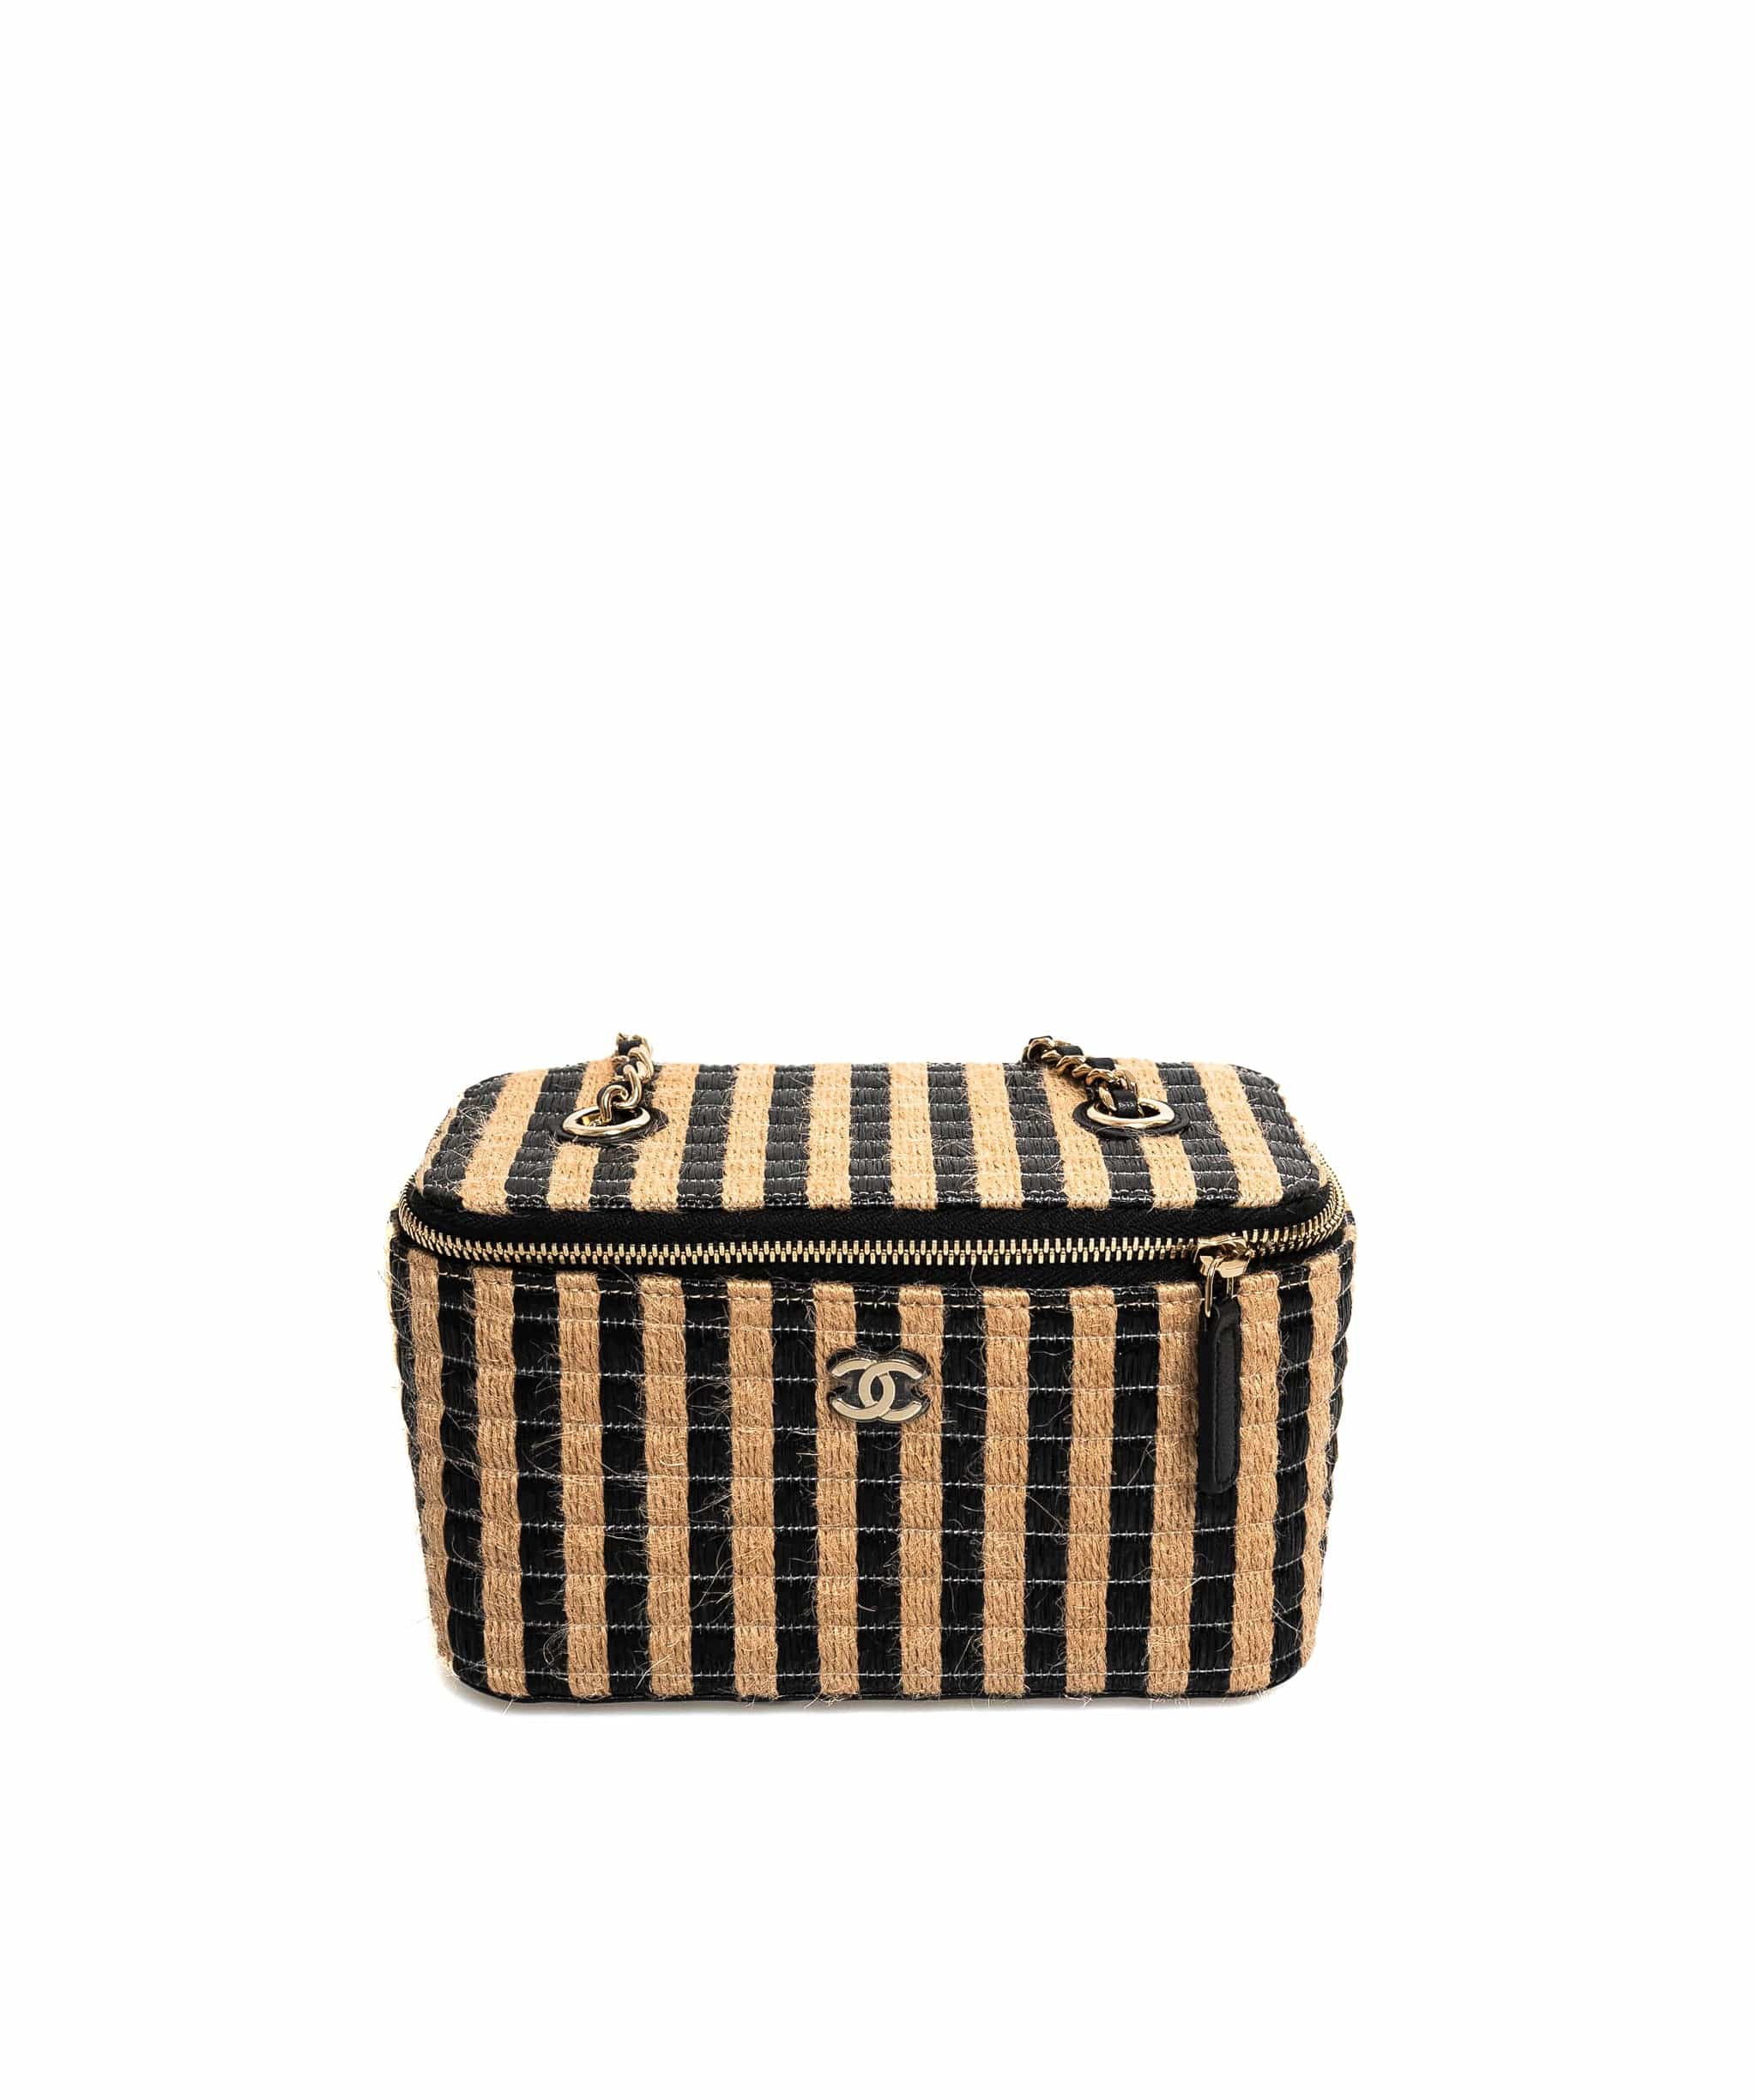 Chanel Chanel Black Wicka Basket Crossbody Bag  - AGL1548